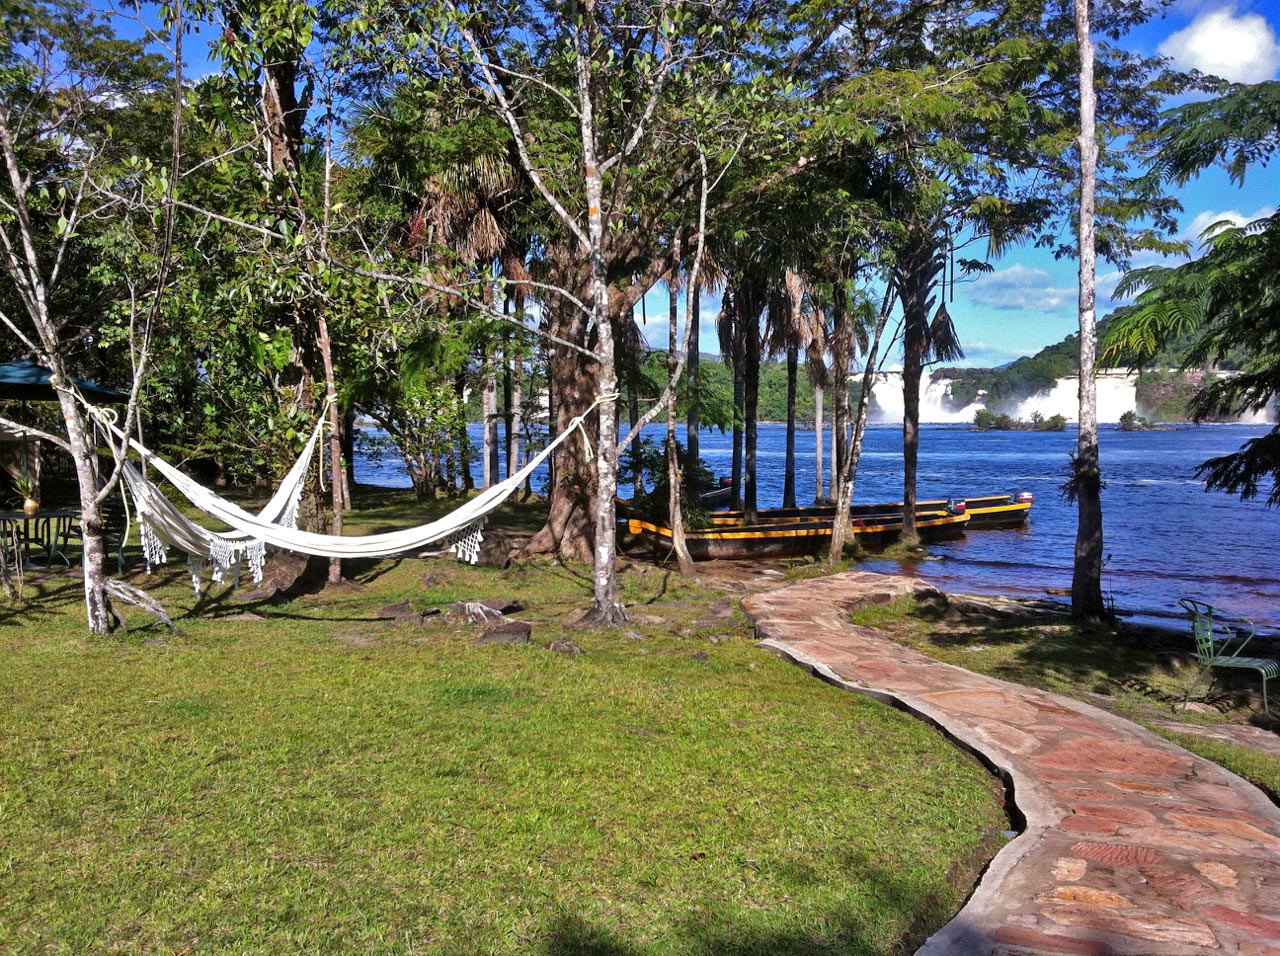 Viaja a Canaima para conocer el Salto Ángel después de la cuarentena